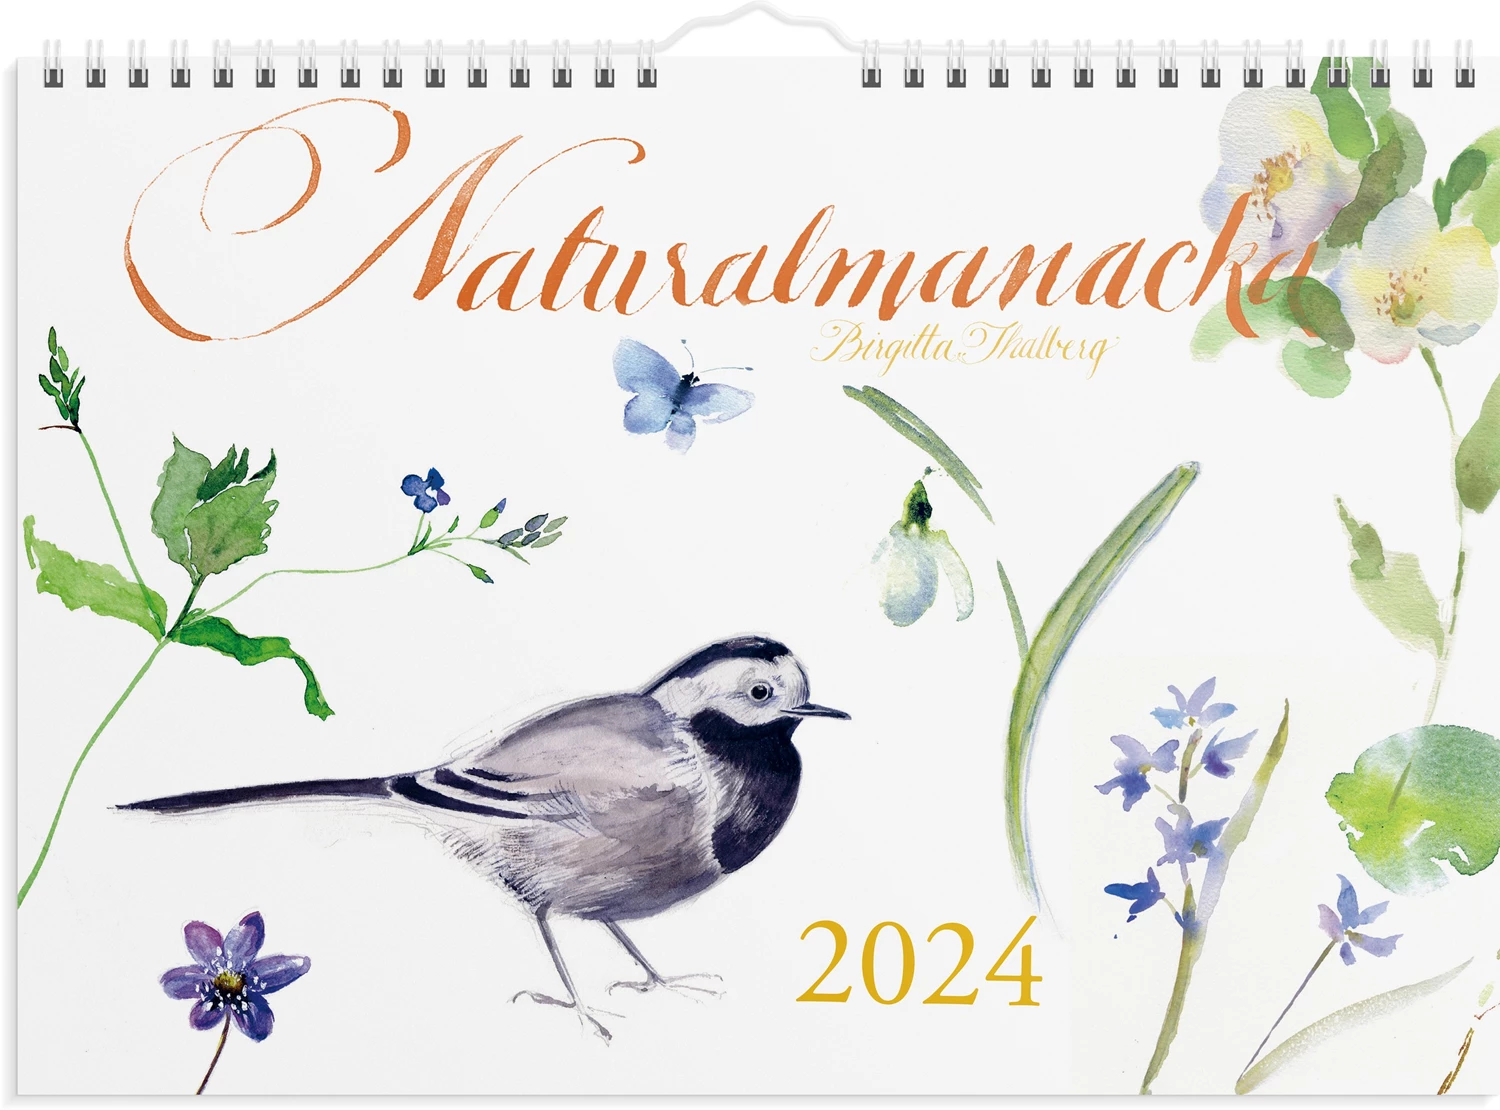 Väggkalender 2024 Naturalmanacka